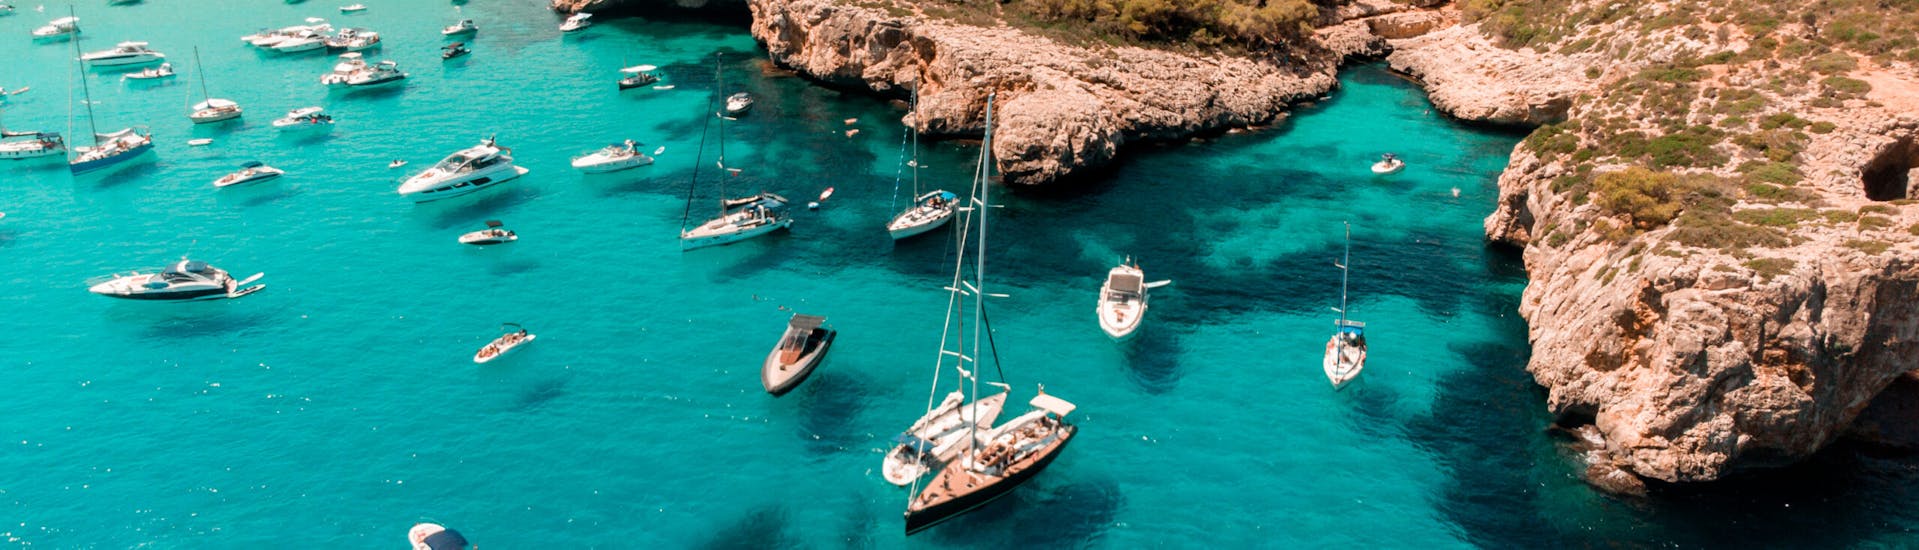 Privé zeilboottocht van Portocolom naar Cala Varques met zwemmen & toeristische attracties.